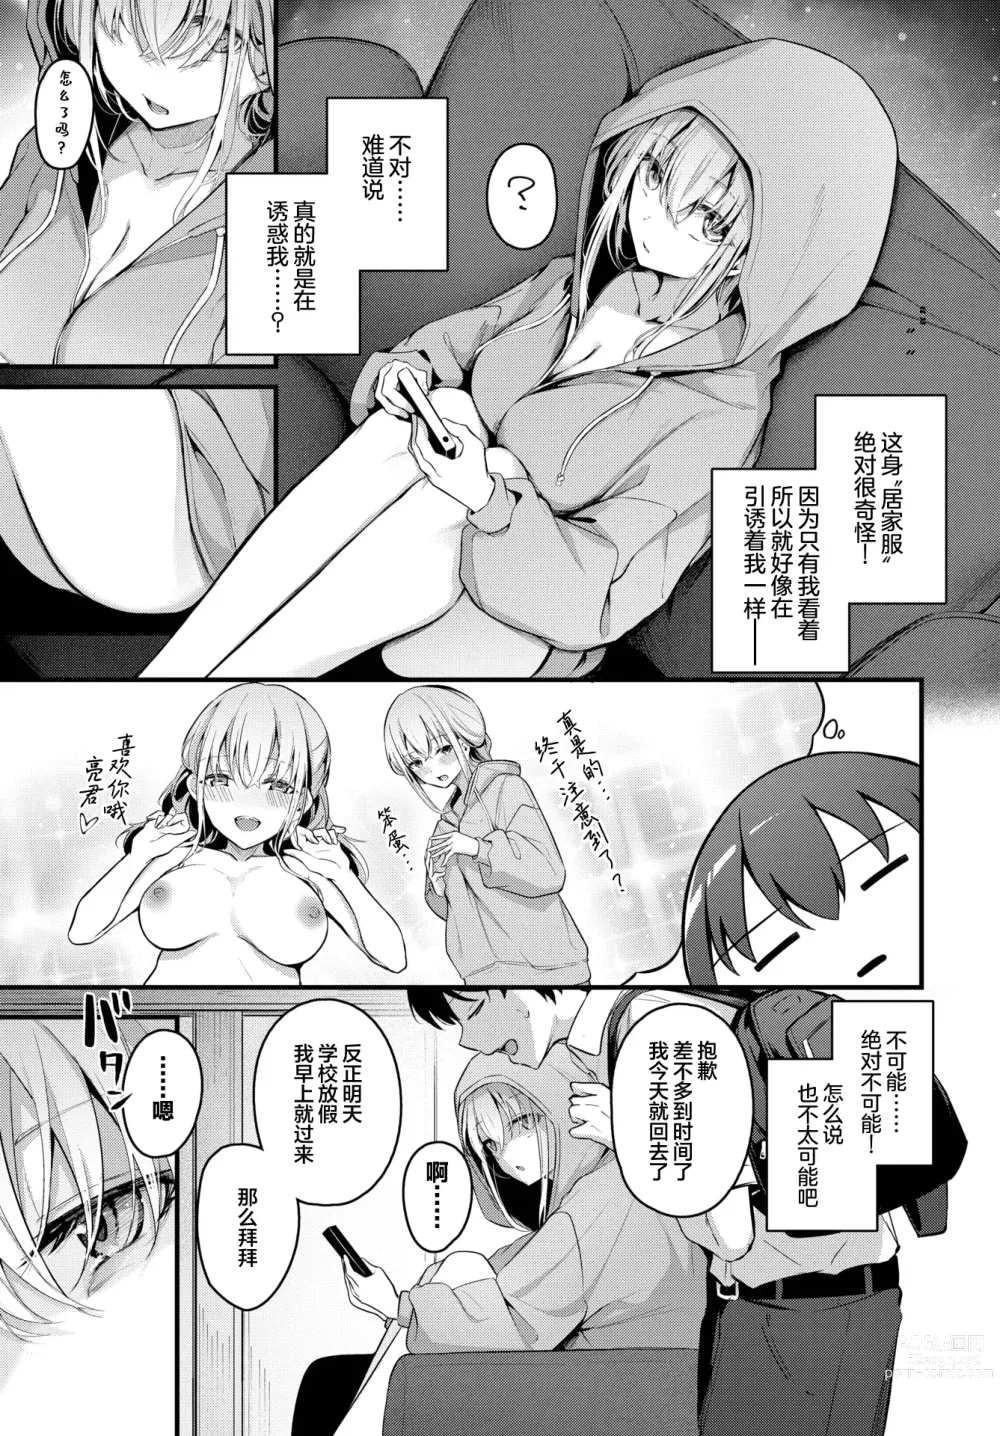 Page 4 of manga Hikikomori Kanojo